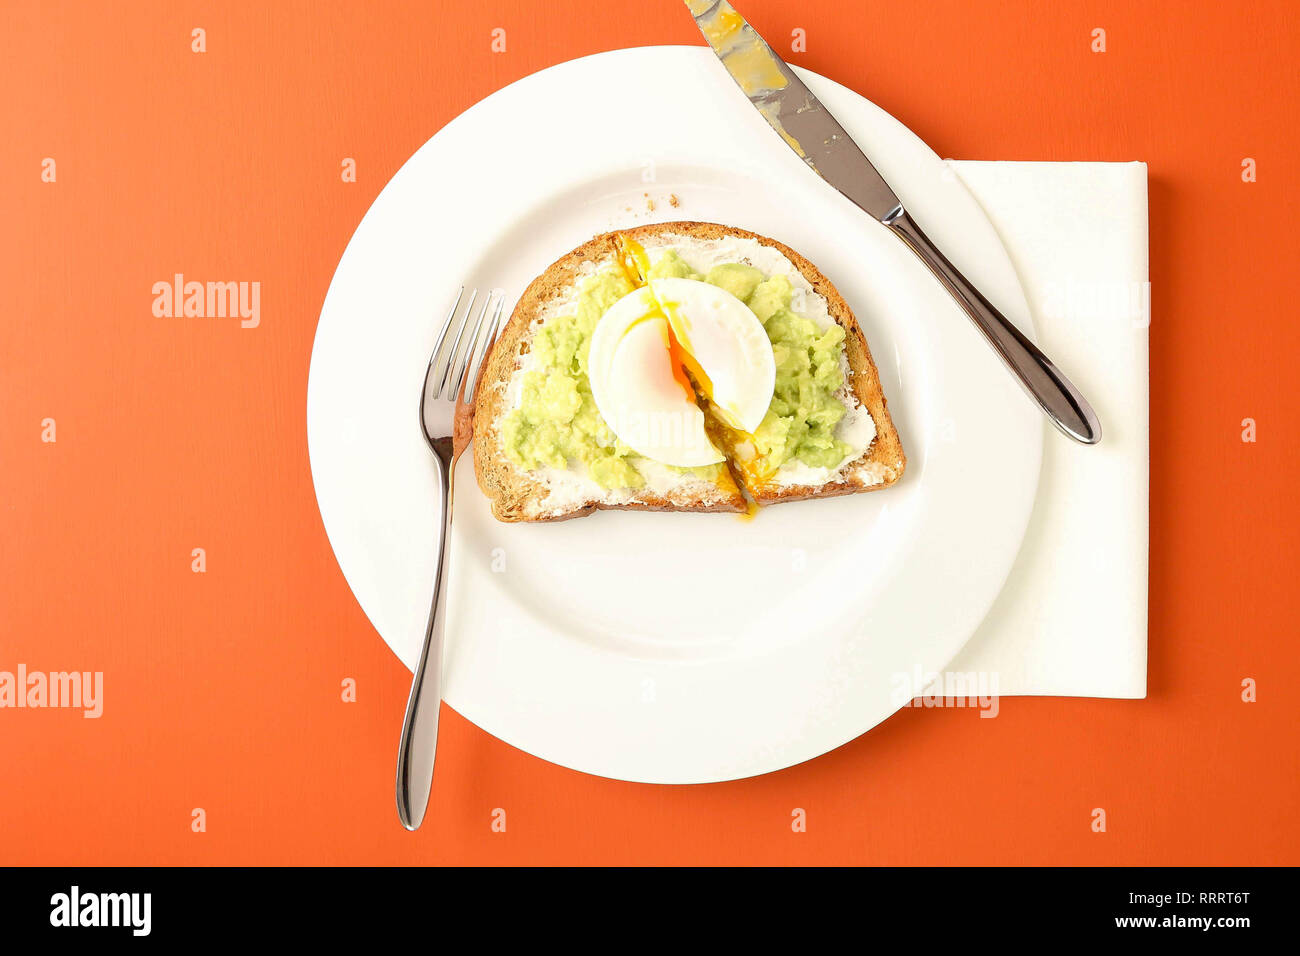 Essen avocado auf Toast mit pochiertem Ei in einem Café. Lebende Korallen Farbtabelle. Stockfoto